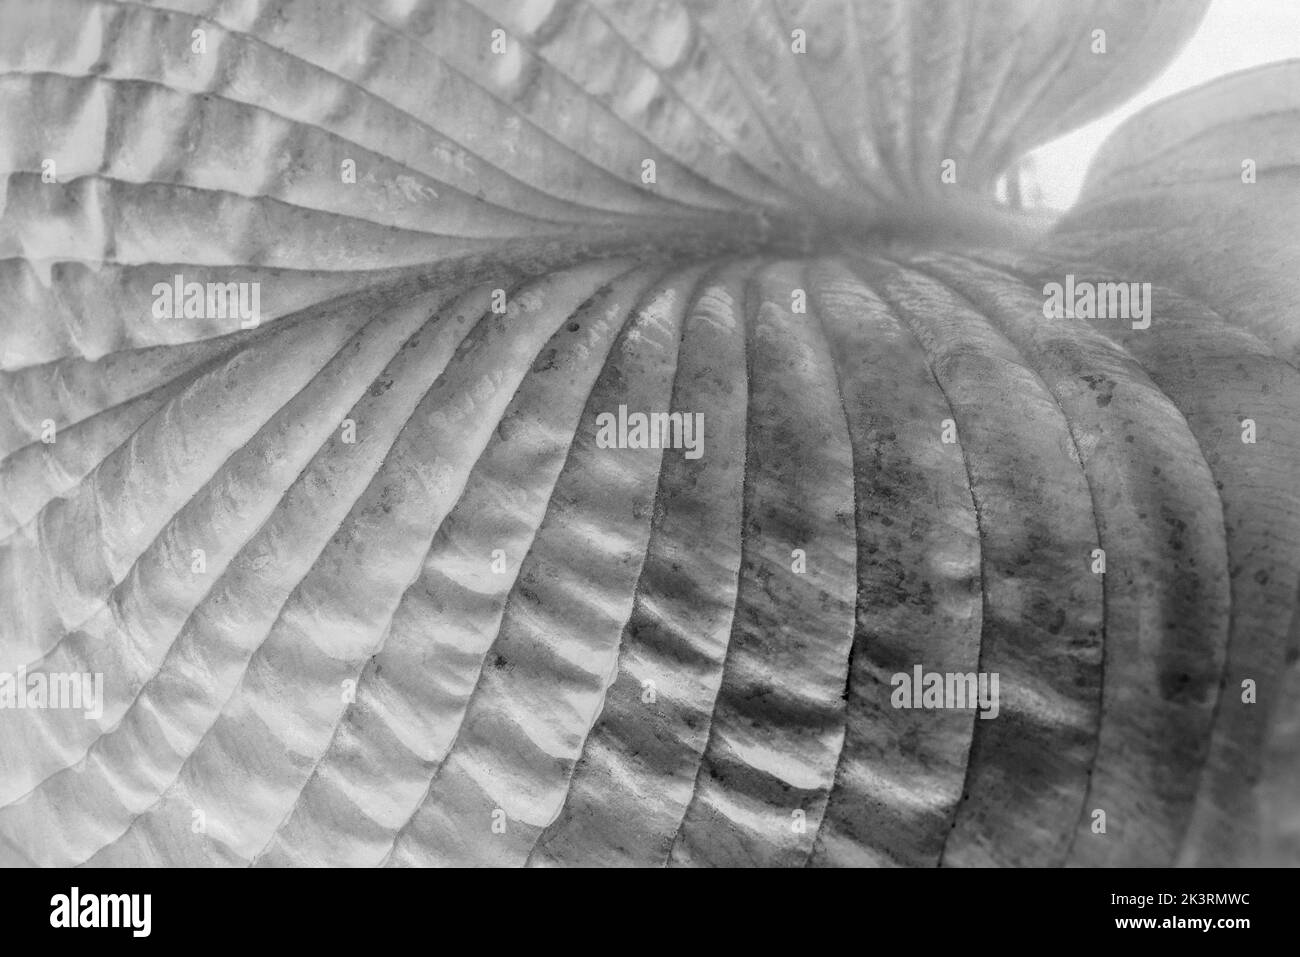 Gros plan de la lumière du soleil révélant la feuille fortement striée d'une plante Hosta. Plantation sculpturale. Texture/motif abstrait, fond noir et blanc. Banque D'Images